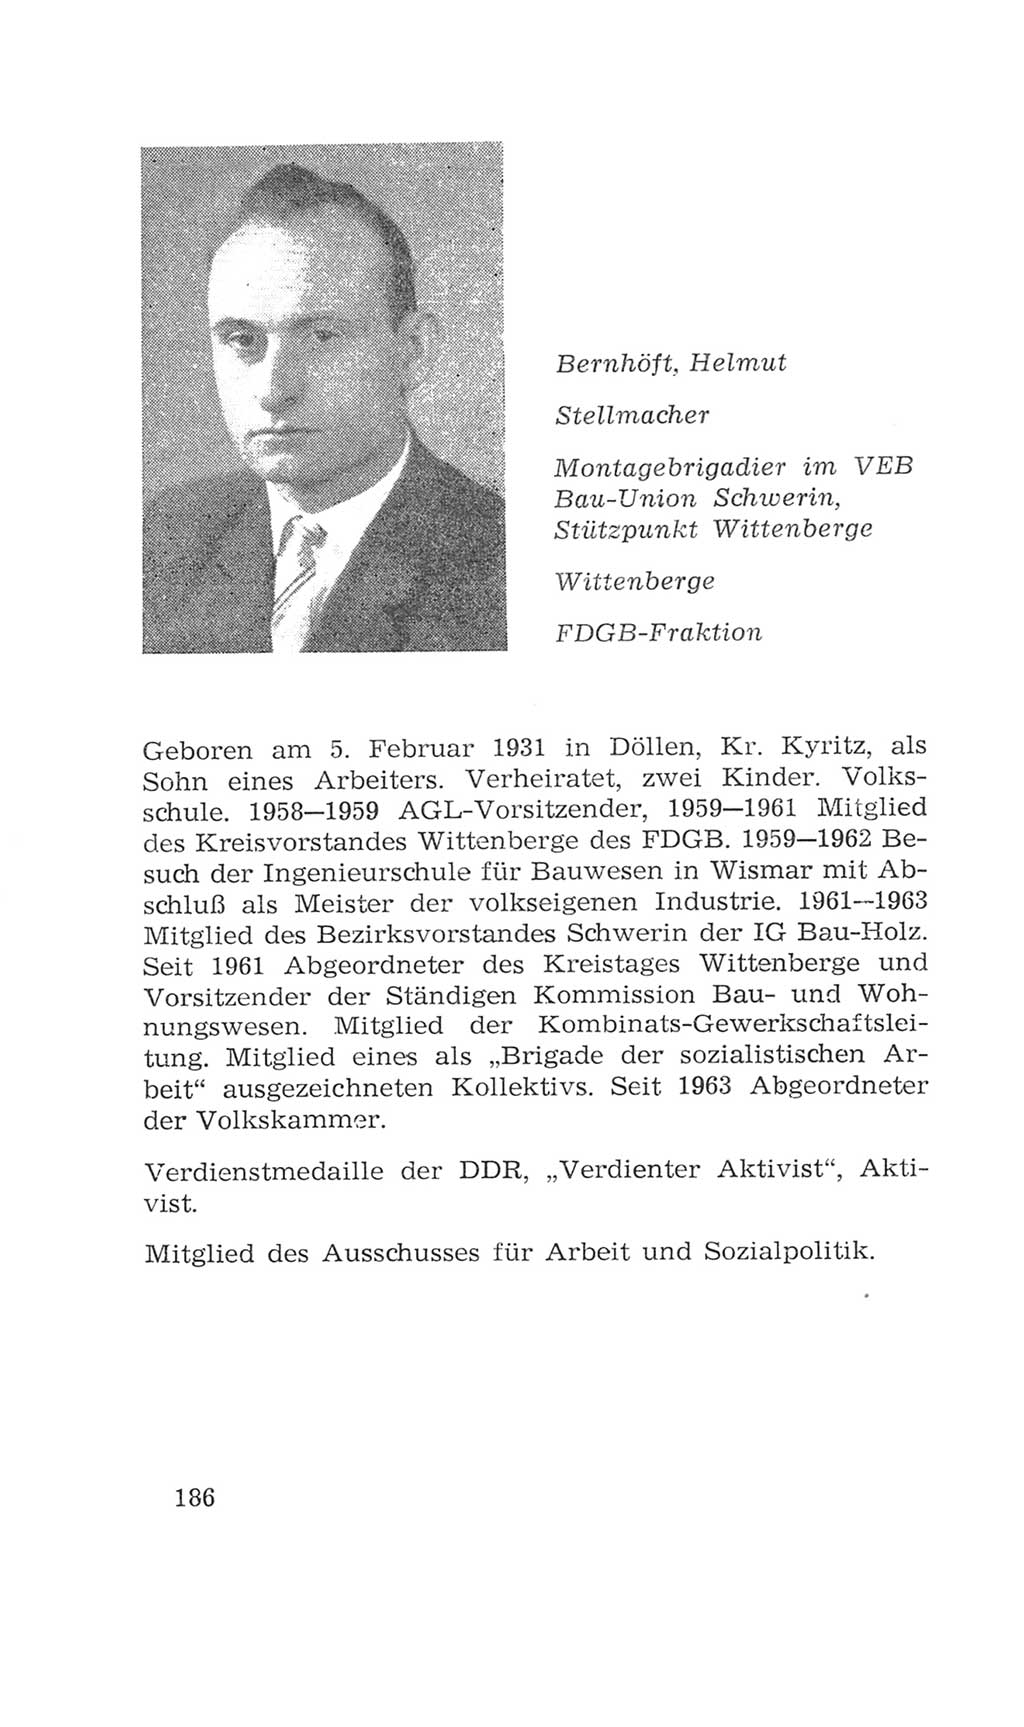 Volkskammer (VK) der Deutschen Demokratischen Republik (DDR), 4. Wahlperiode 1963-1967, Seite 186 (VK. DDR 4. WP. 1963-1967, S. 186)